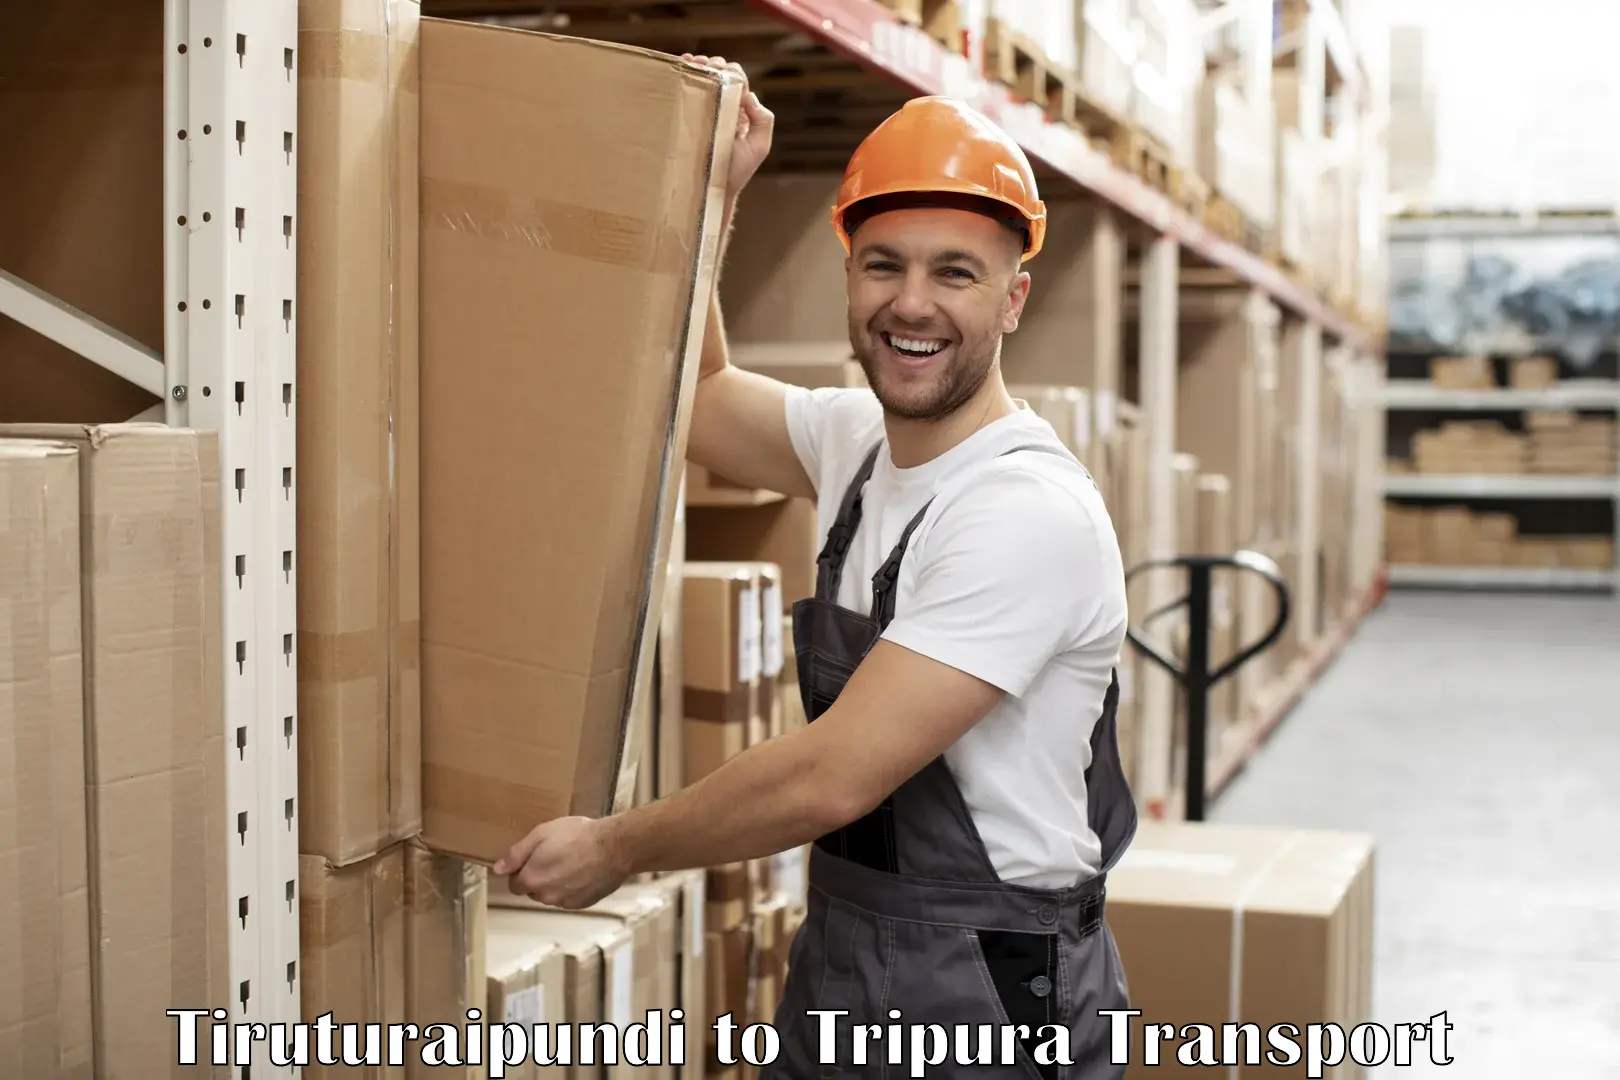 Furniture transport service Tiruturaipundi to Tripura